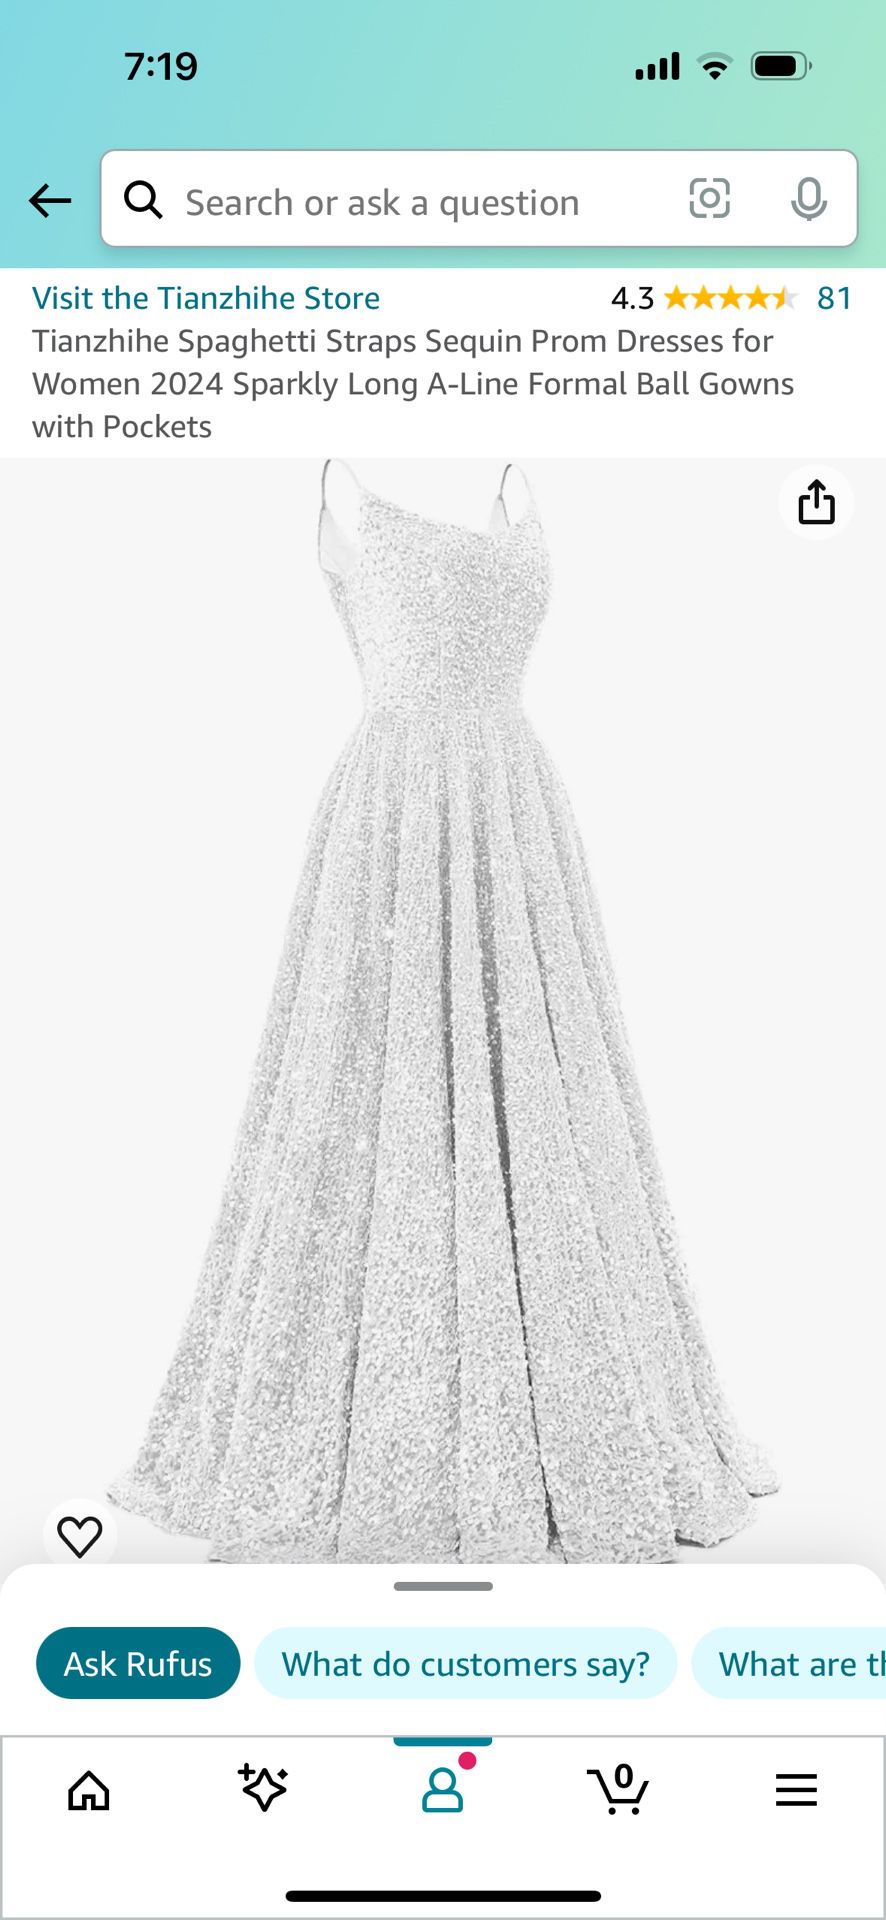 Amazon White Dress (Never Used) Sz:16 